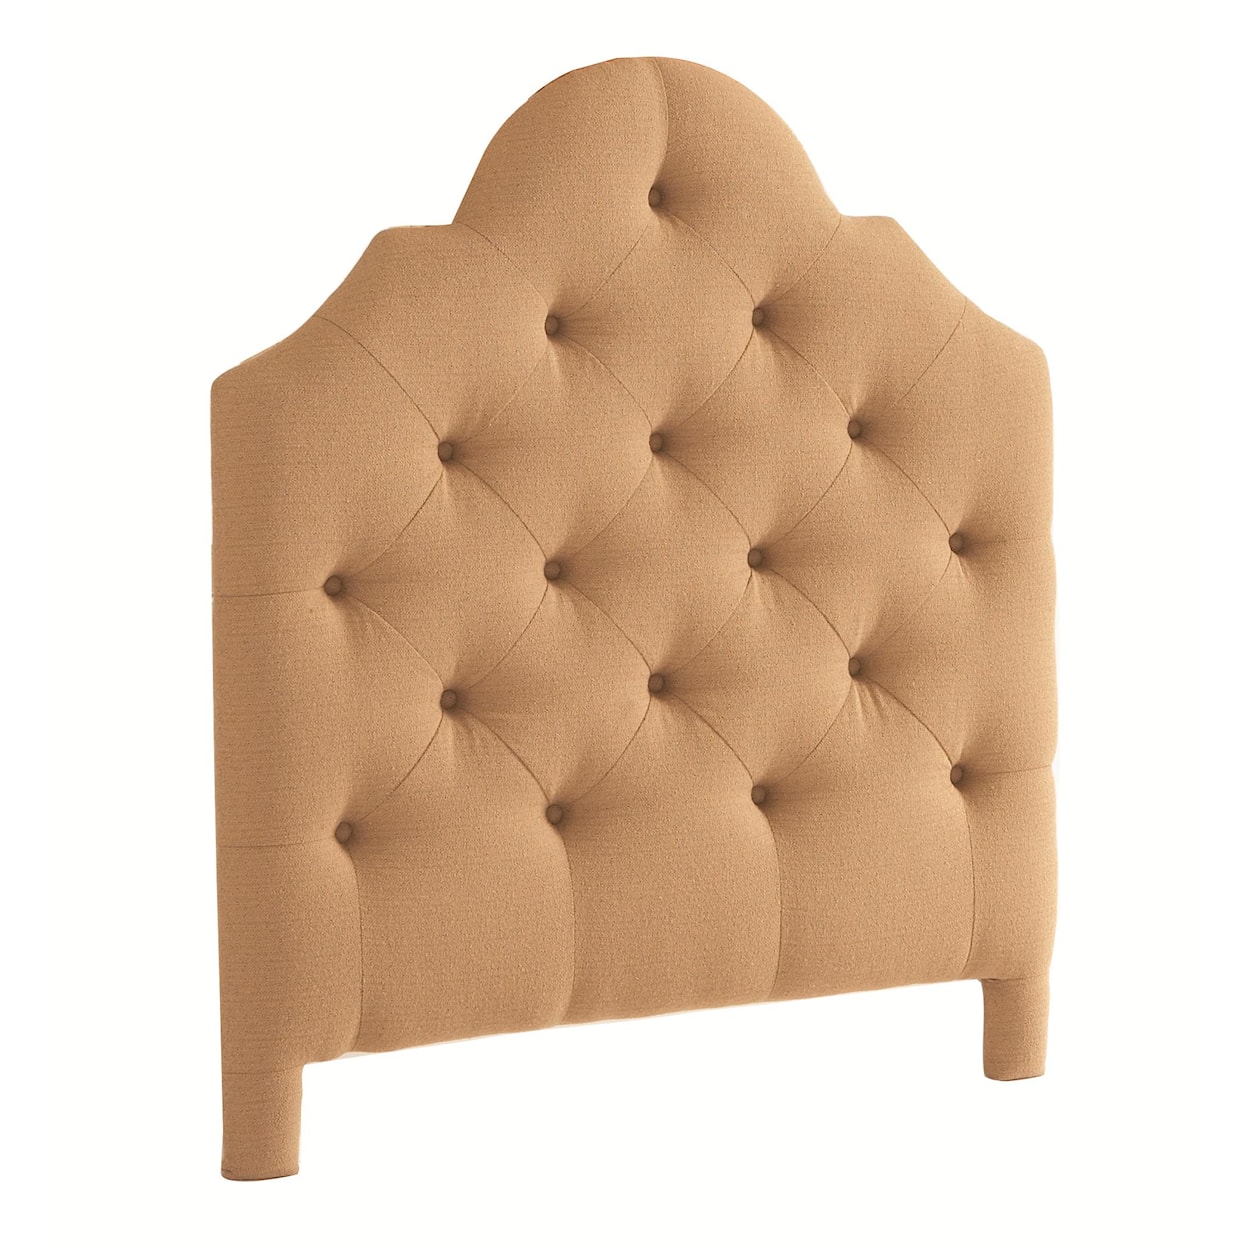 Bassett Custom Upholstered Beds Queen Barcelona Upholstered Headboard